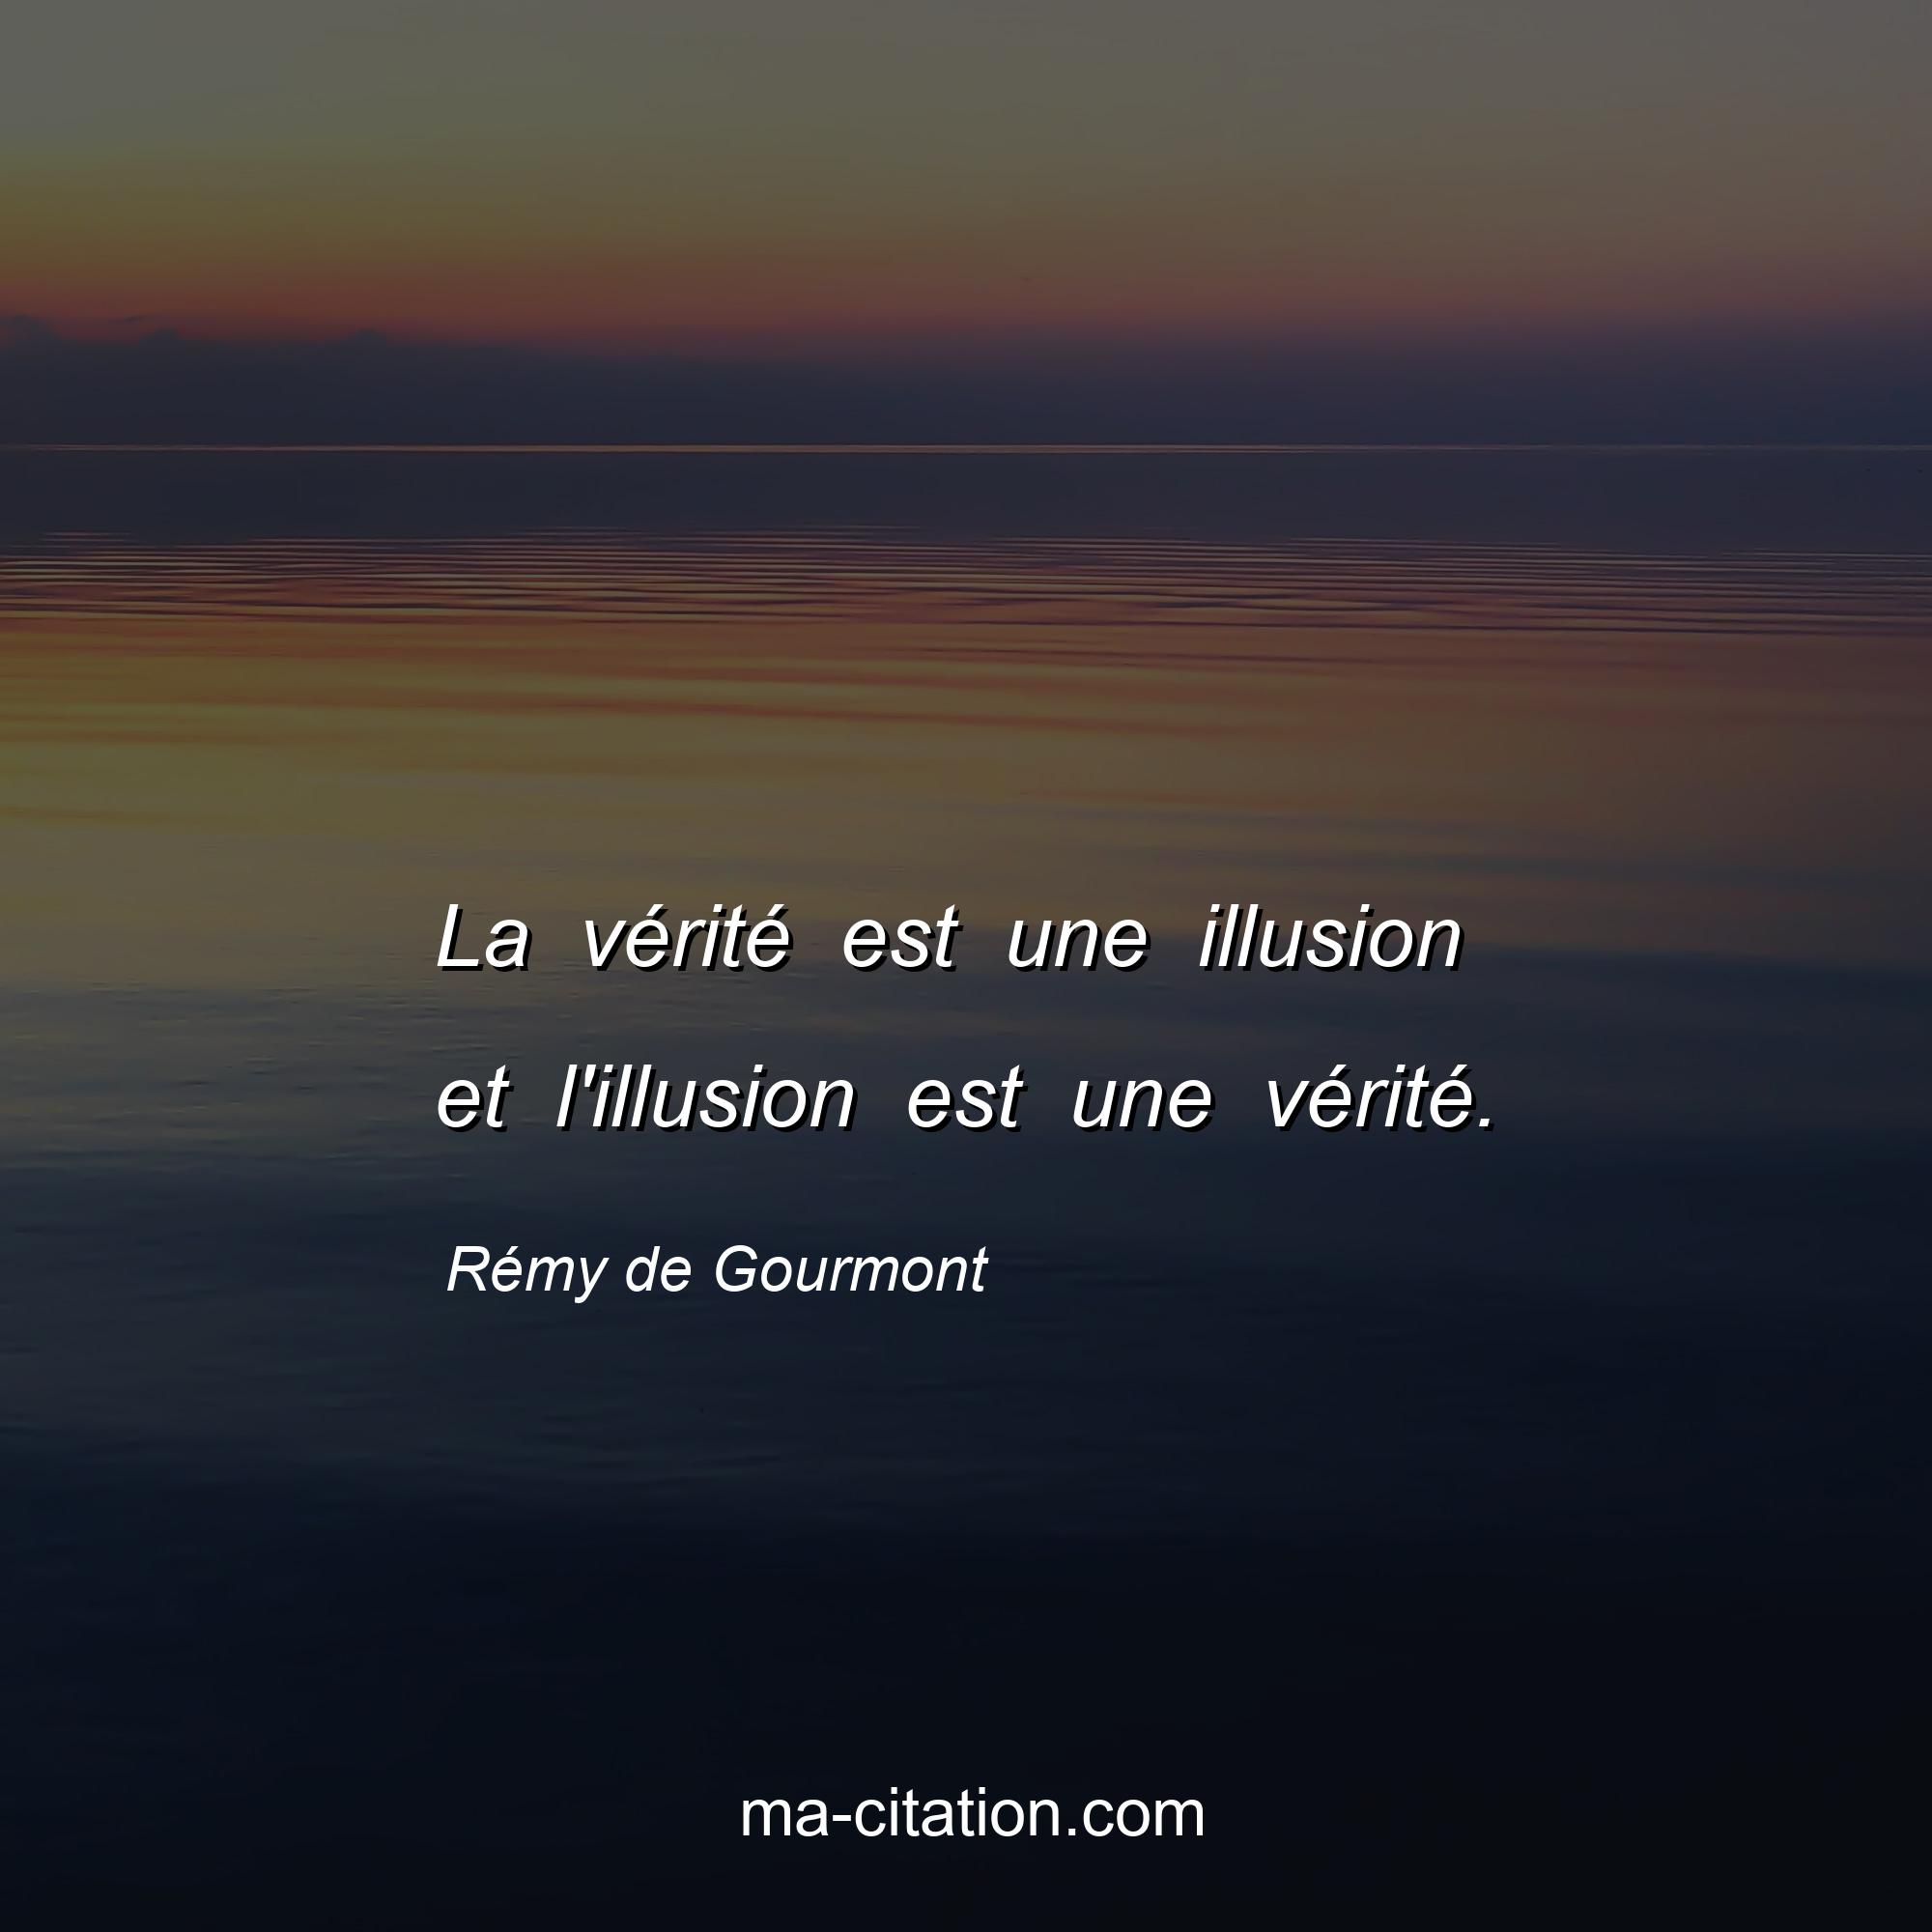 Rémy de Gourmont : La vérité est une illusion et l'illusion est une vérité.